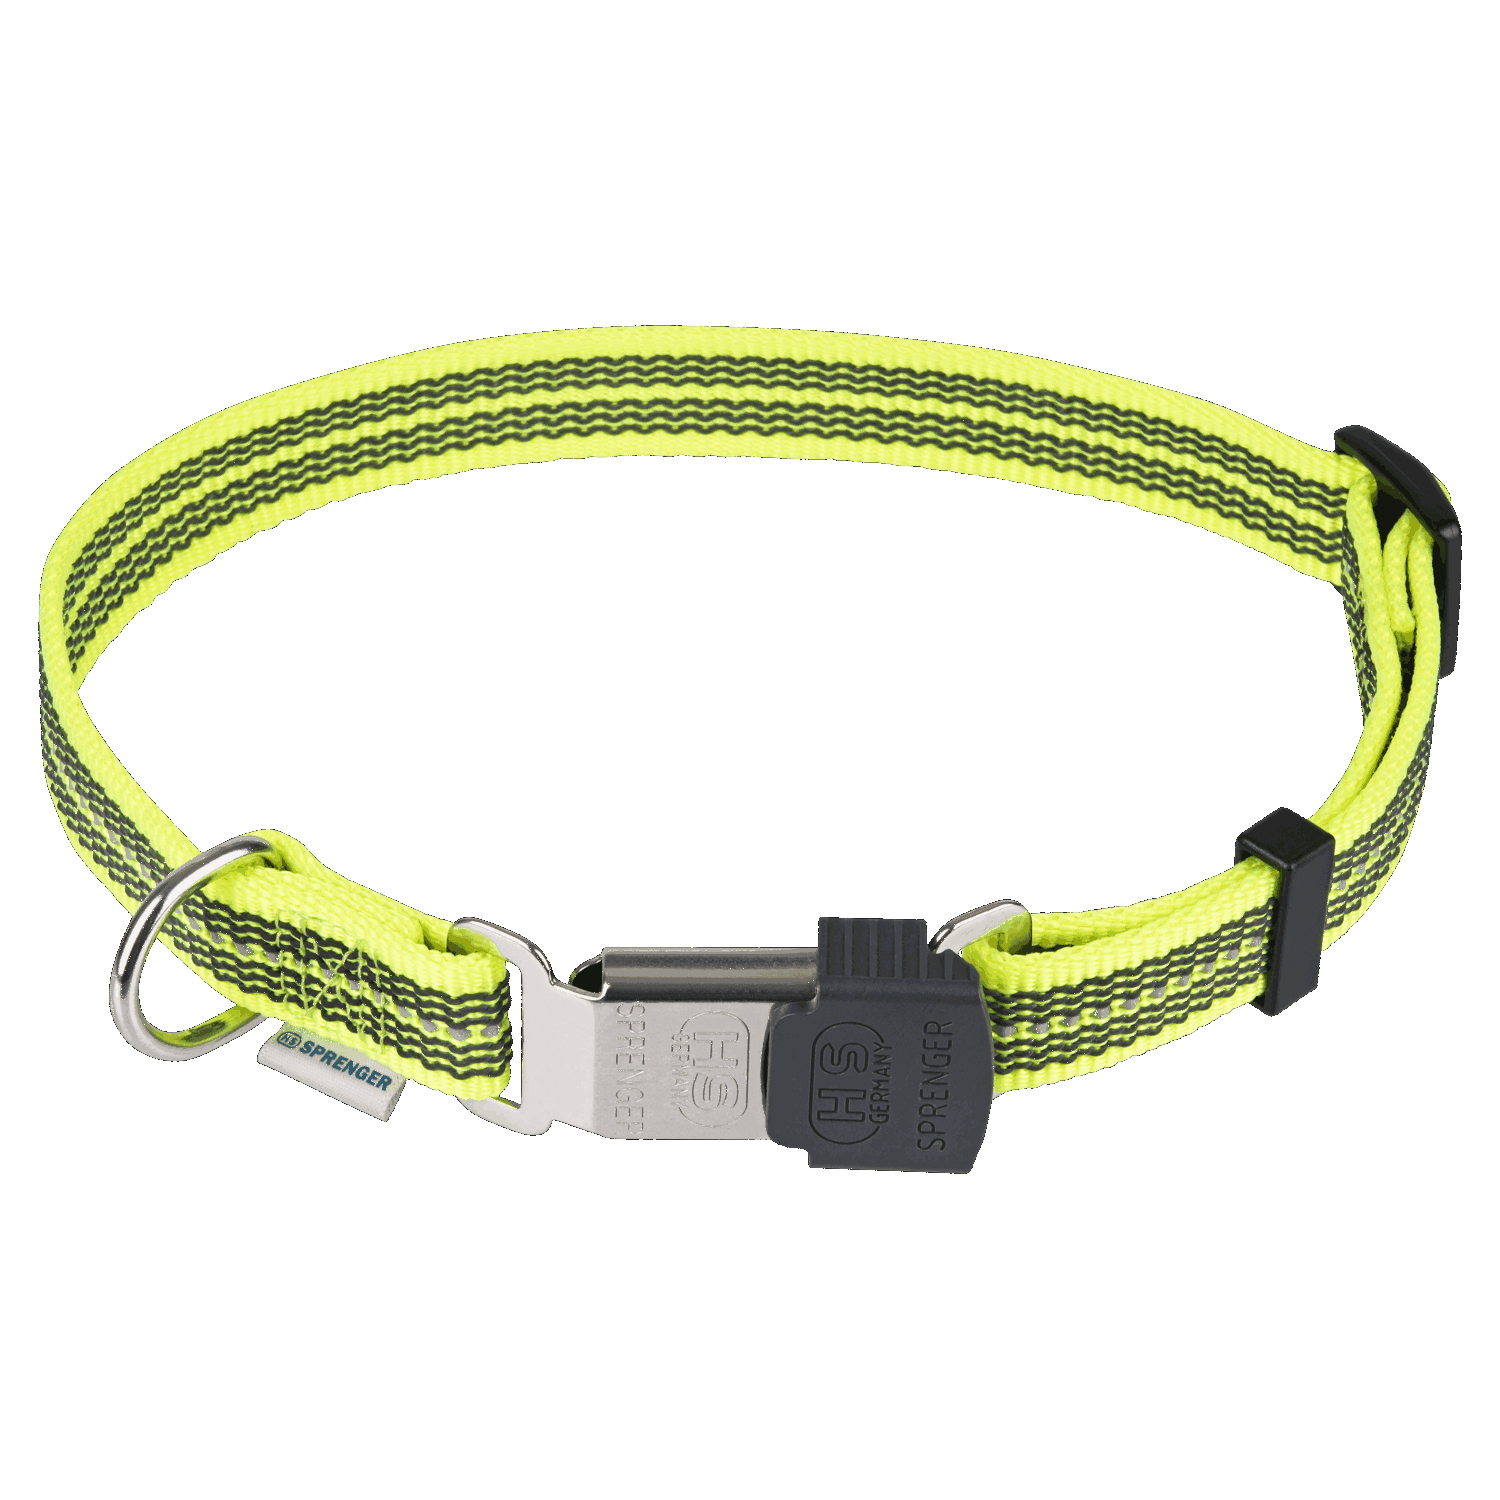 Verstellbares Hundehalsband - reflektierend | 59440-81.png | 1704464899